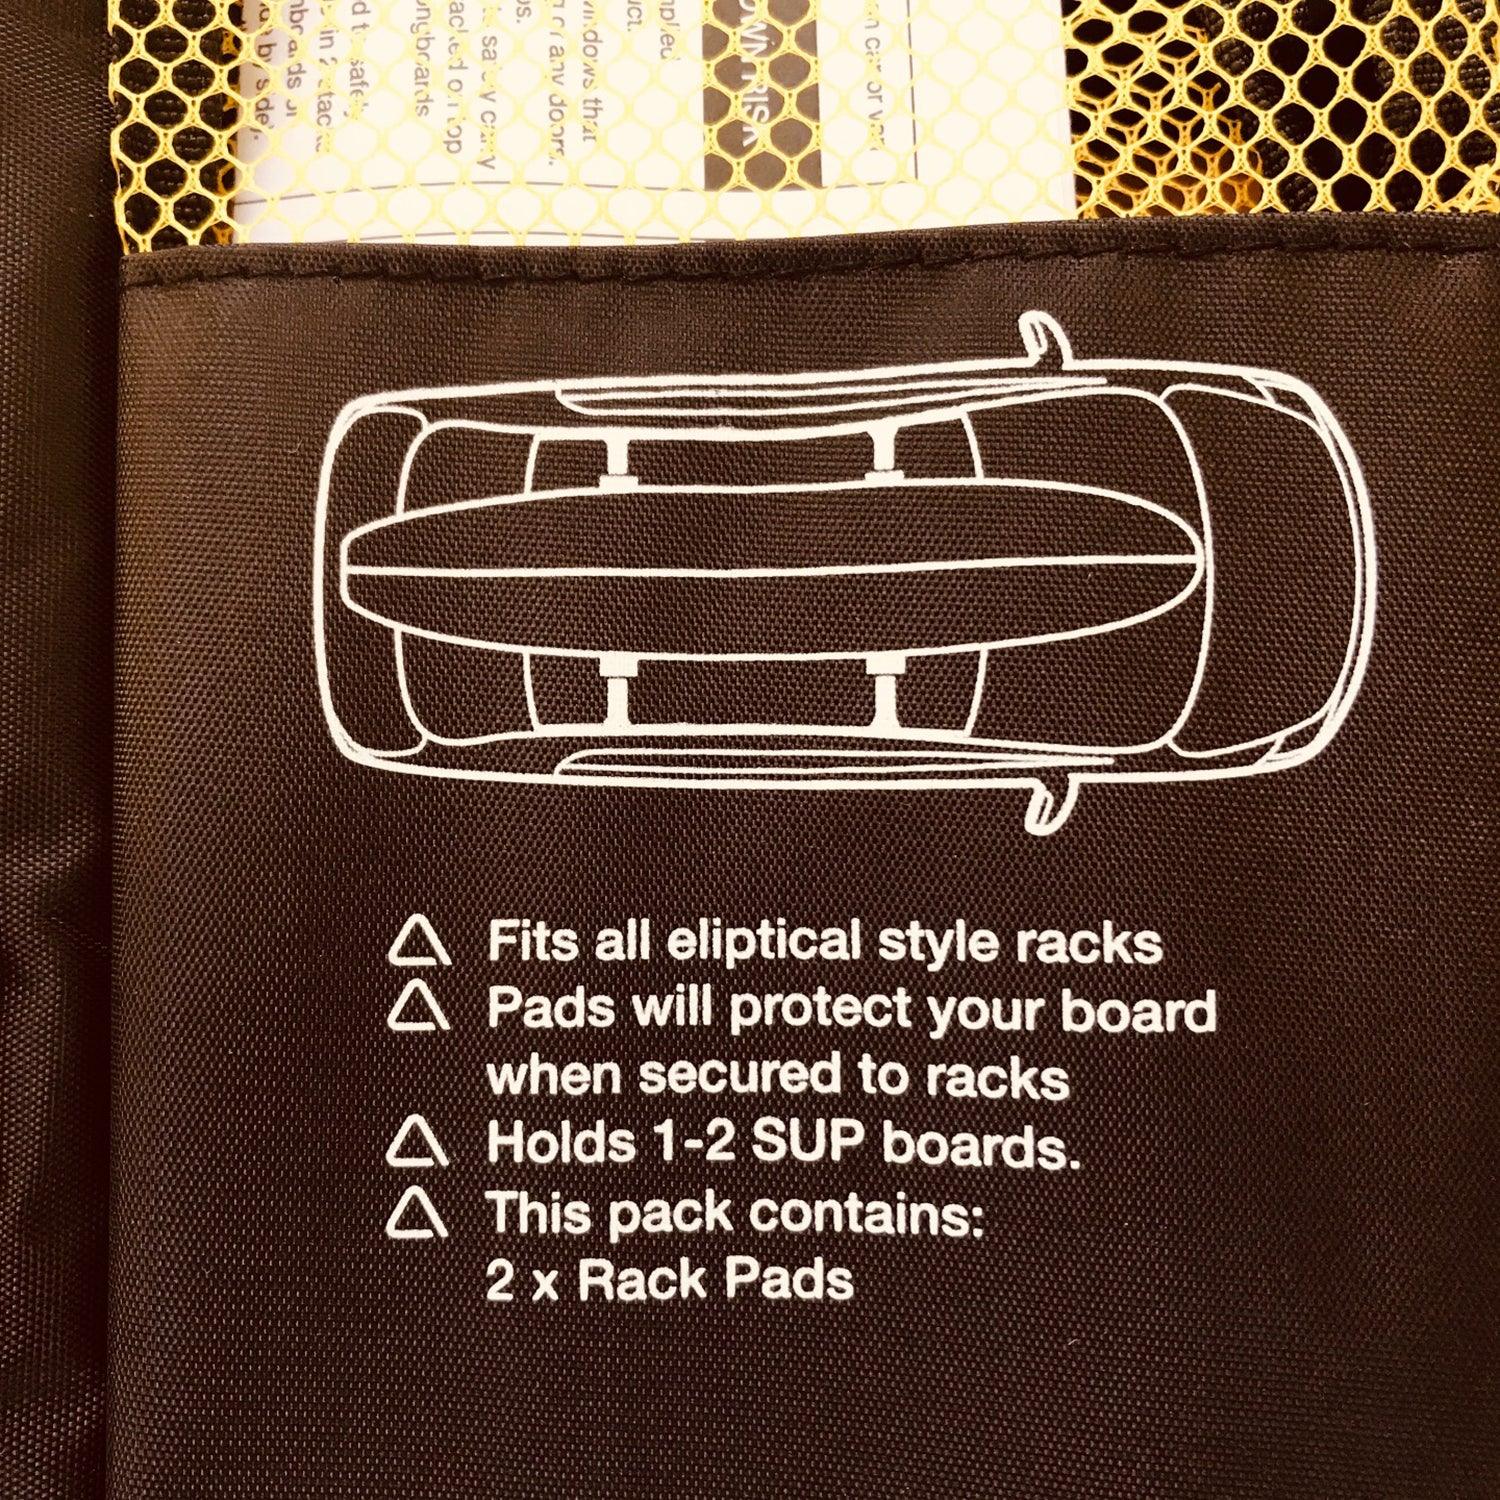 Produktbild von zubehör " Premium SUP Hard Rack Pads " der Marke FCS für 59.00 €. Erhältlich online bei Lite Venture ( www.liteventure.de )